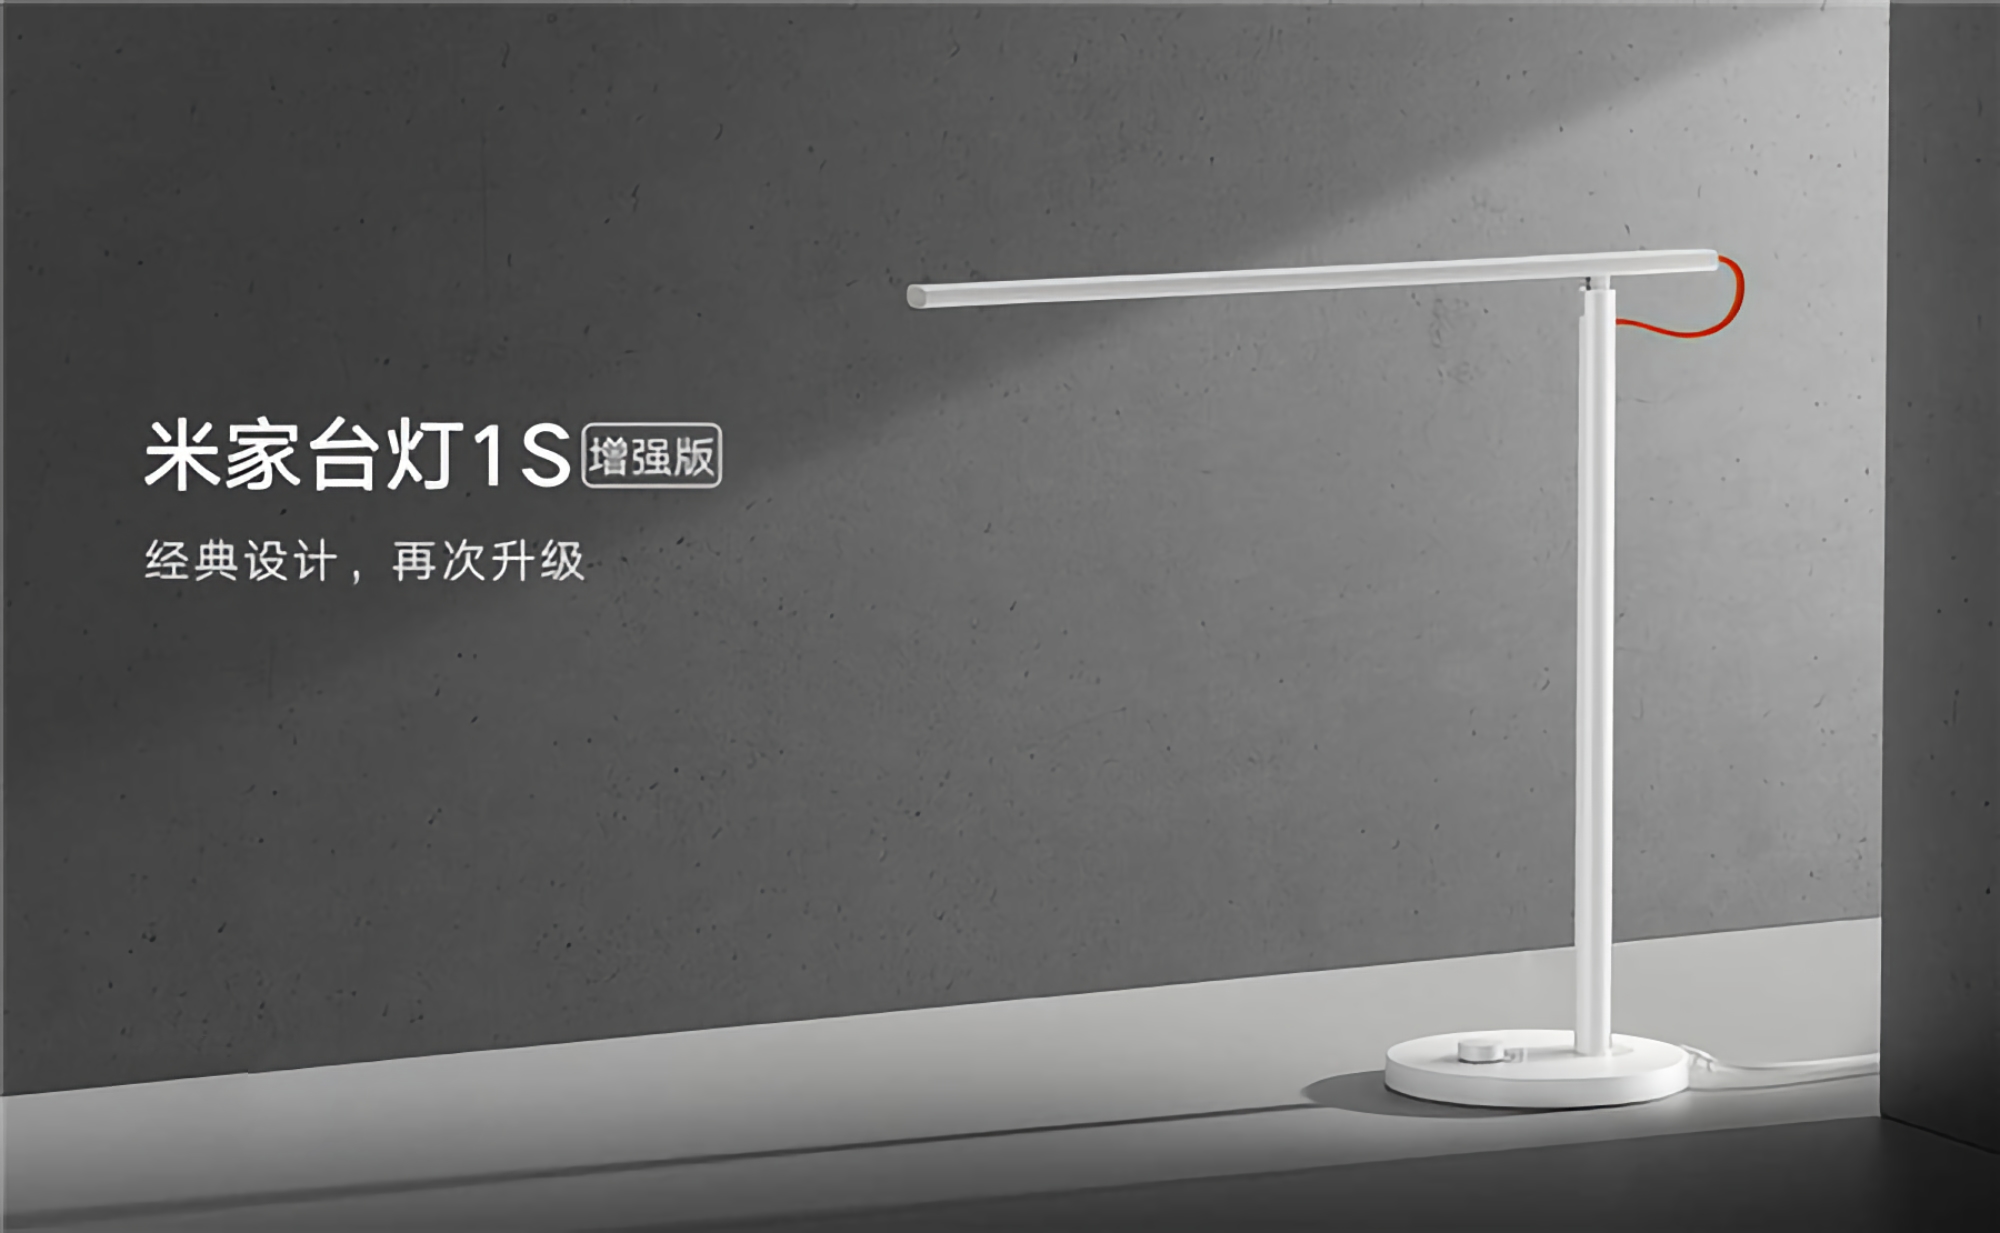 Xiaomi a présenté une lampe intelligente MiJia Desk Lamp 1S Enhanced avec un nouveau module LED et un prix de 30 $